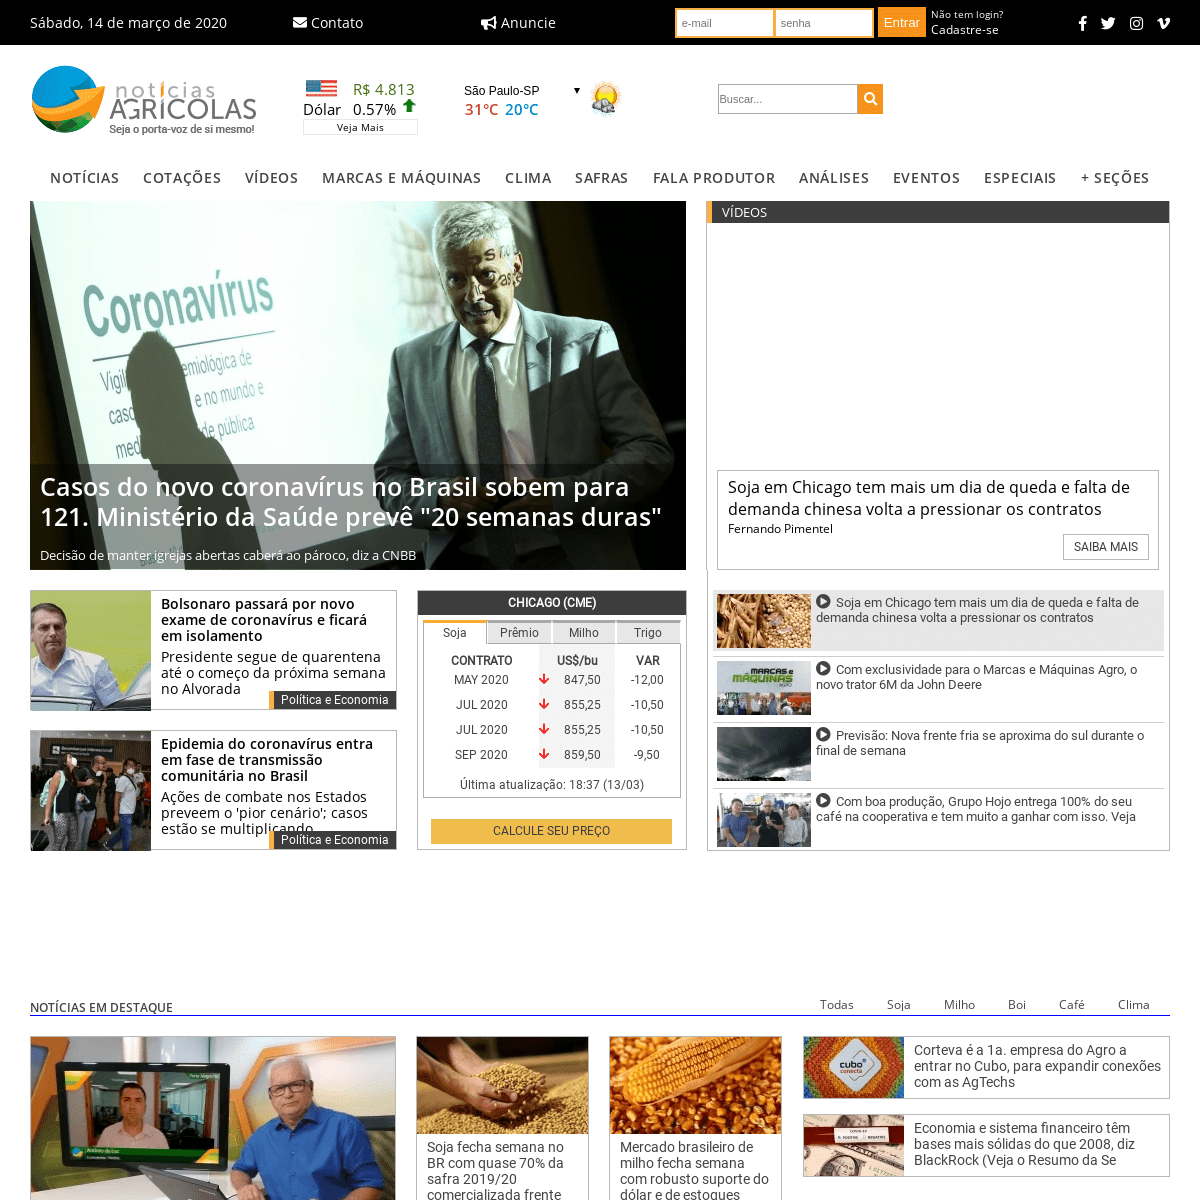 A complete backup of noticiasagricolas.com.br